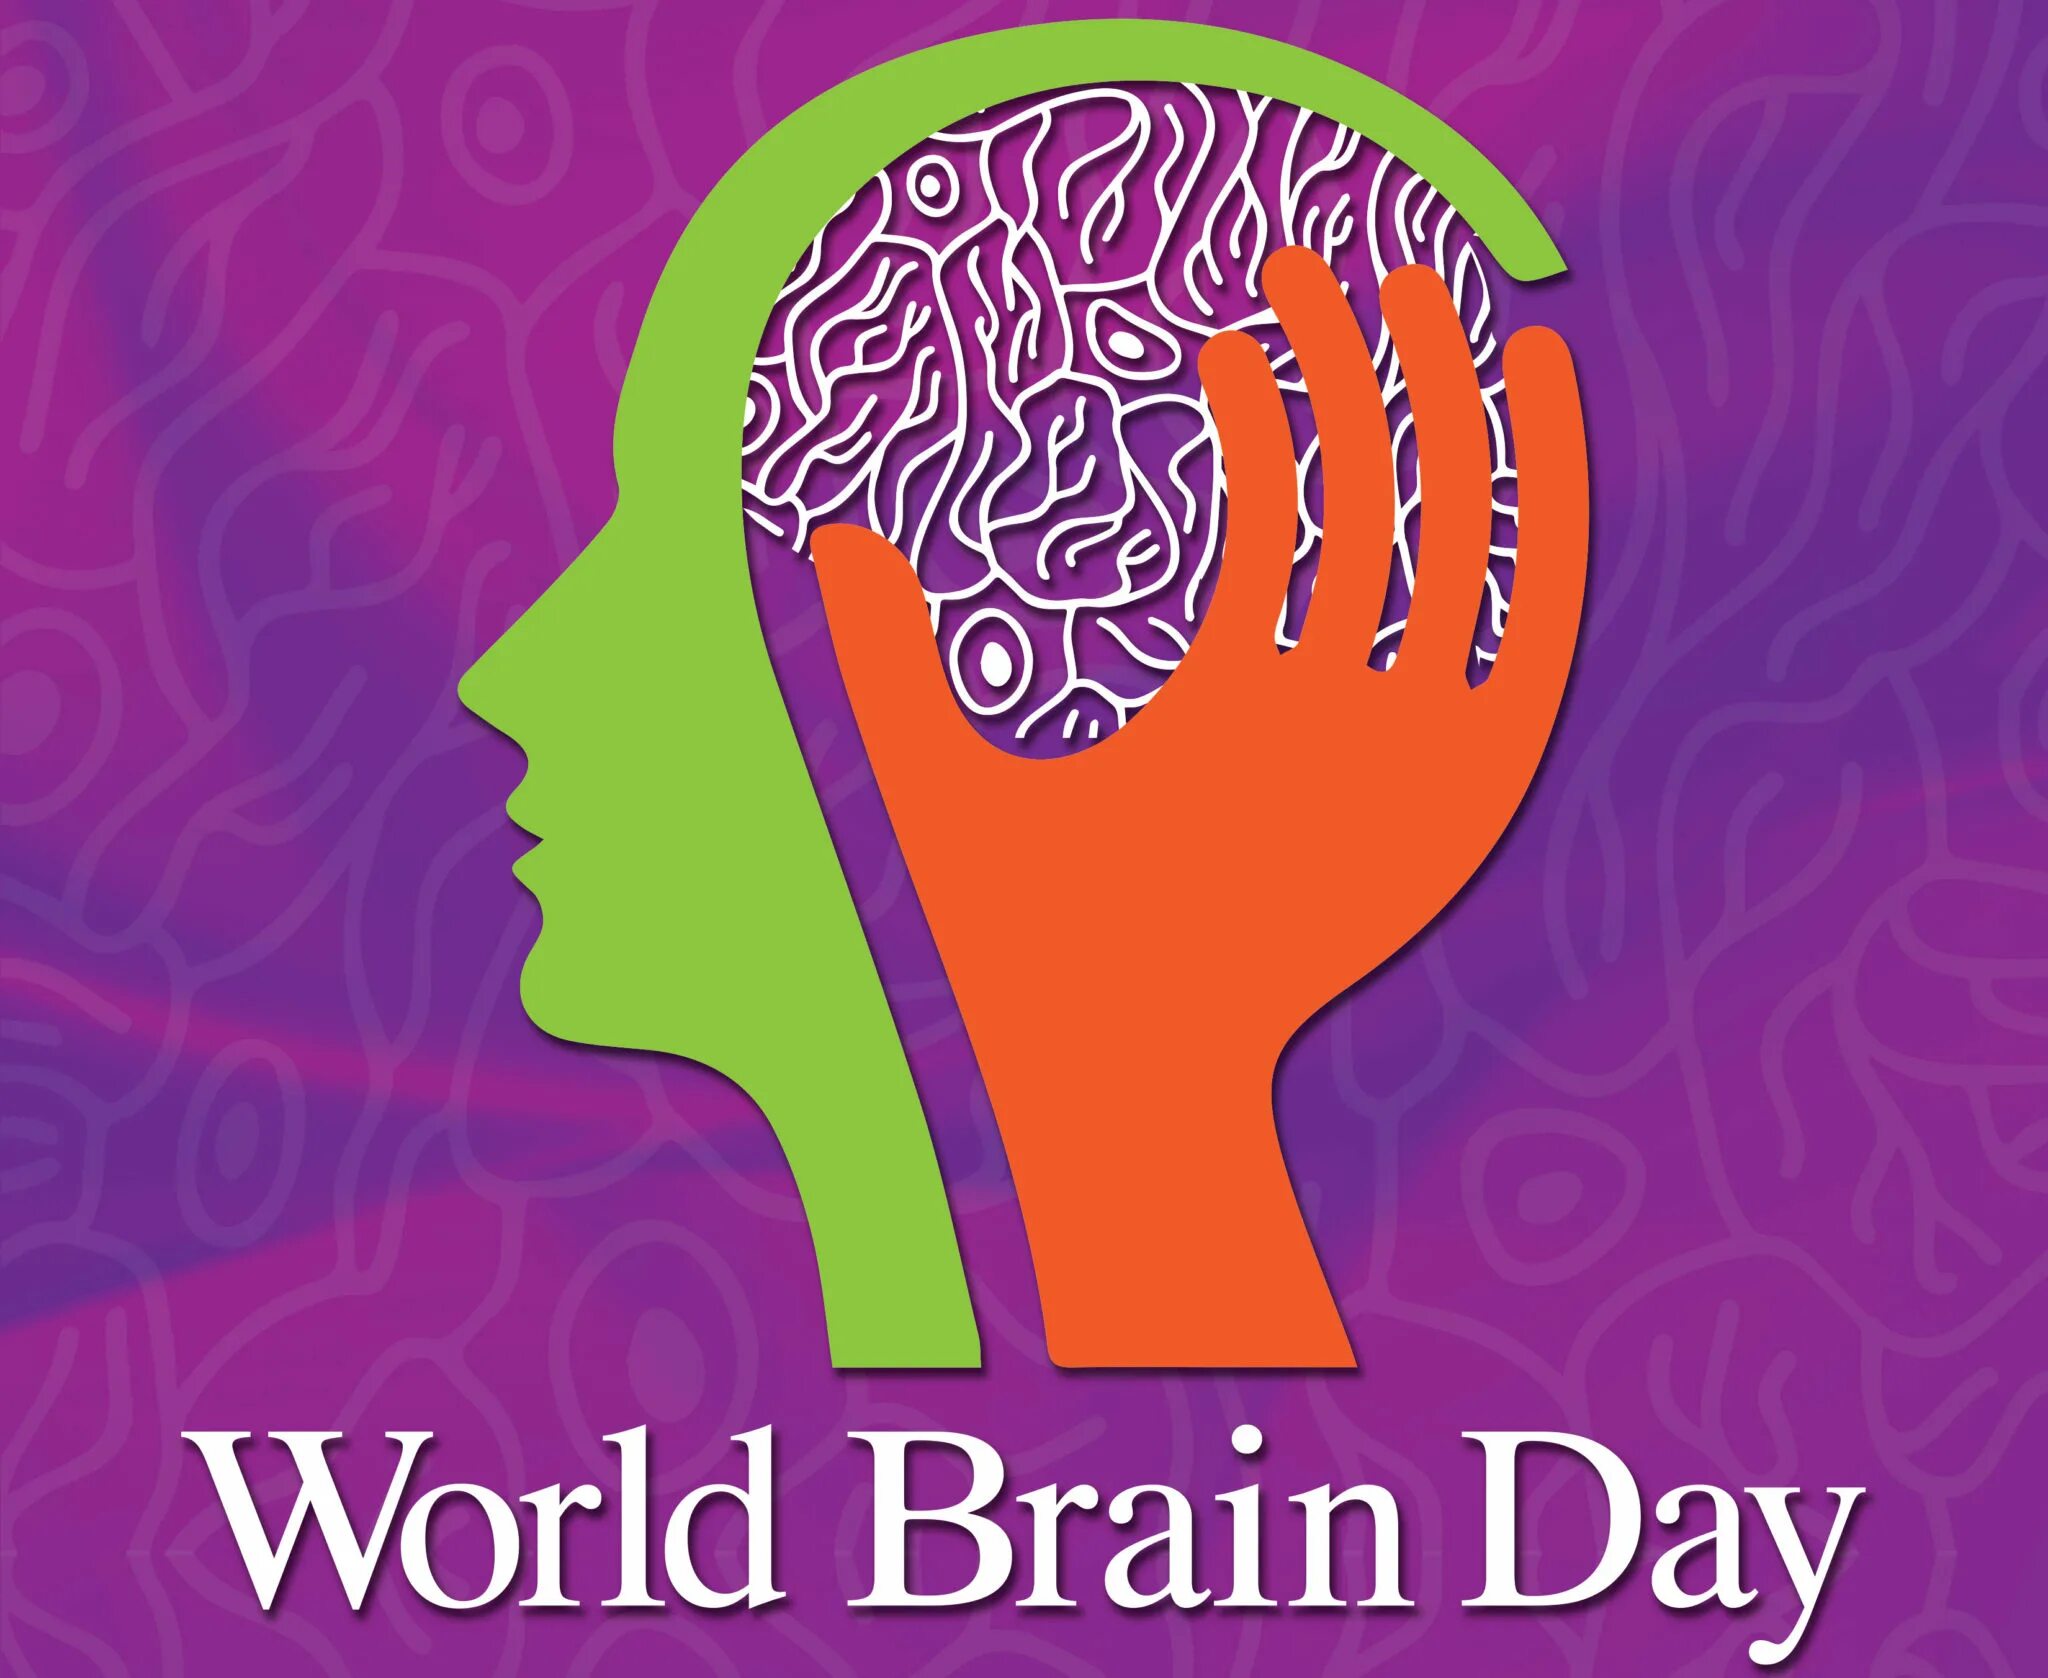 World brain. Всемирный день мозга. 22 Июля Всемирный день мозга. Поздравление с днем мозга. Всемирный день мозга открытка.